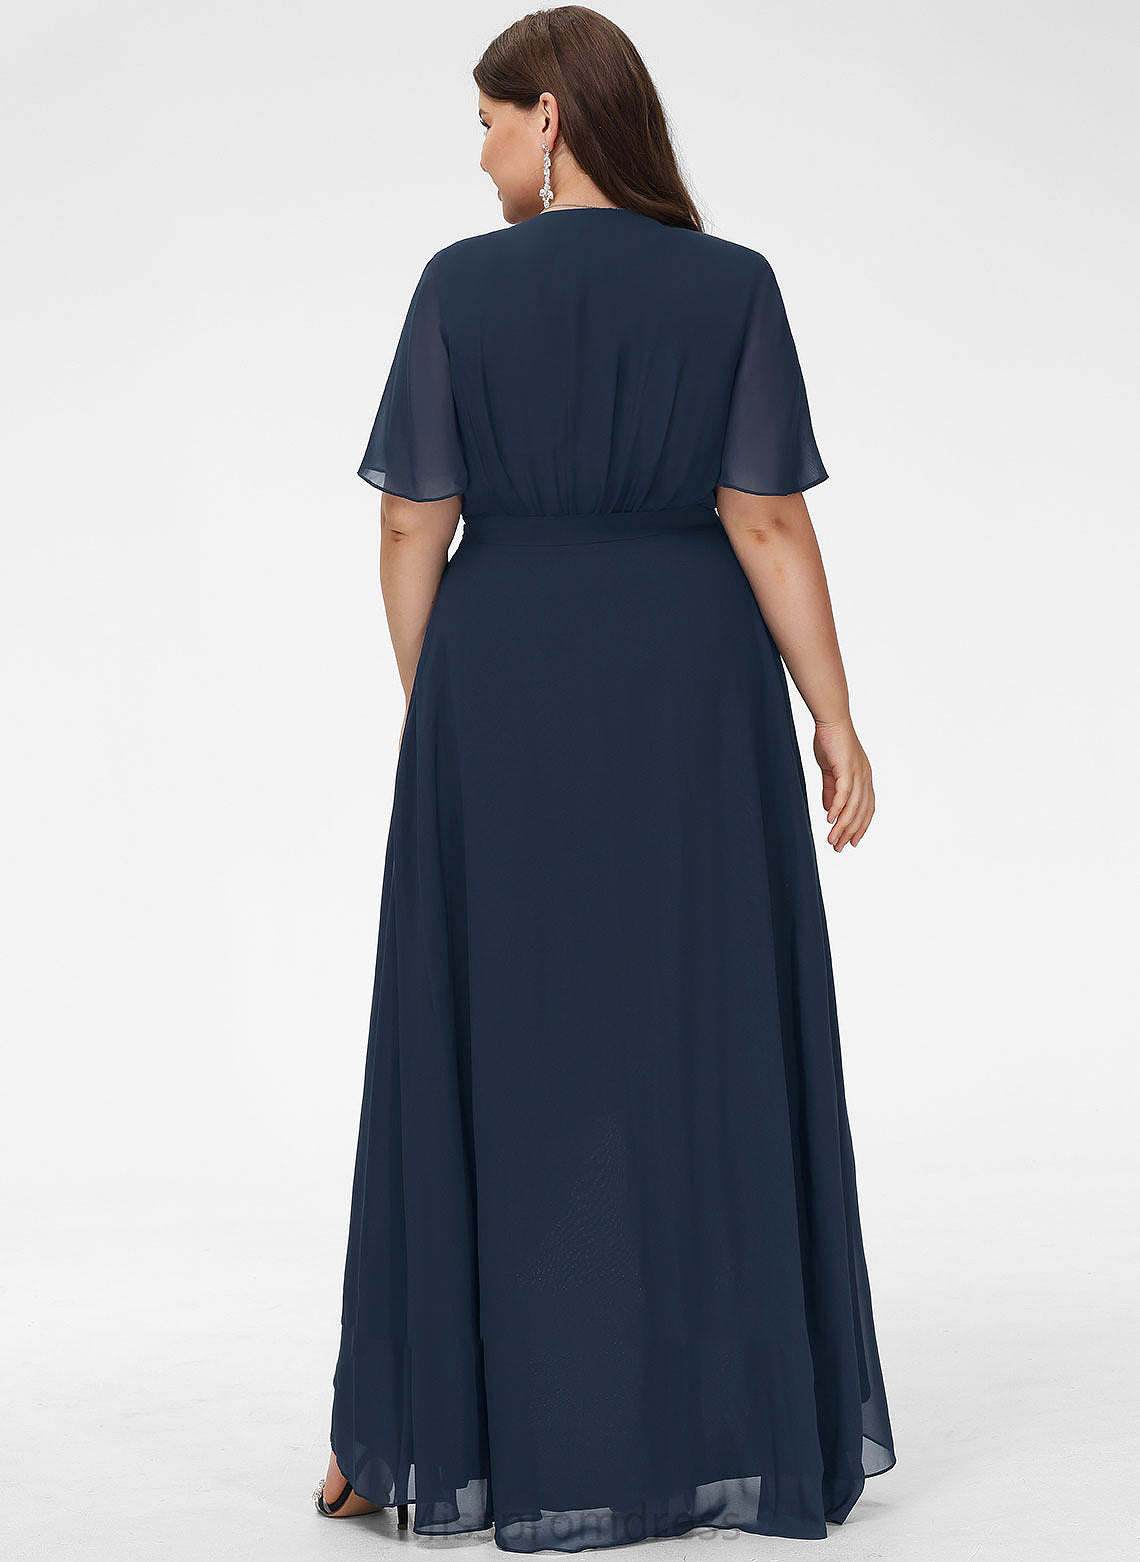 V-neck Length Silhouette Fabric A-Line Embellishment Asymmetrical Bow(s) Neckline Meadow Sleeveless V-Neck Bridesmaid Dresses